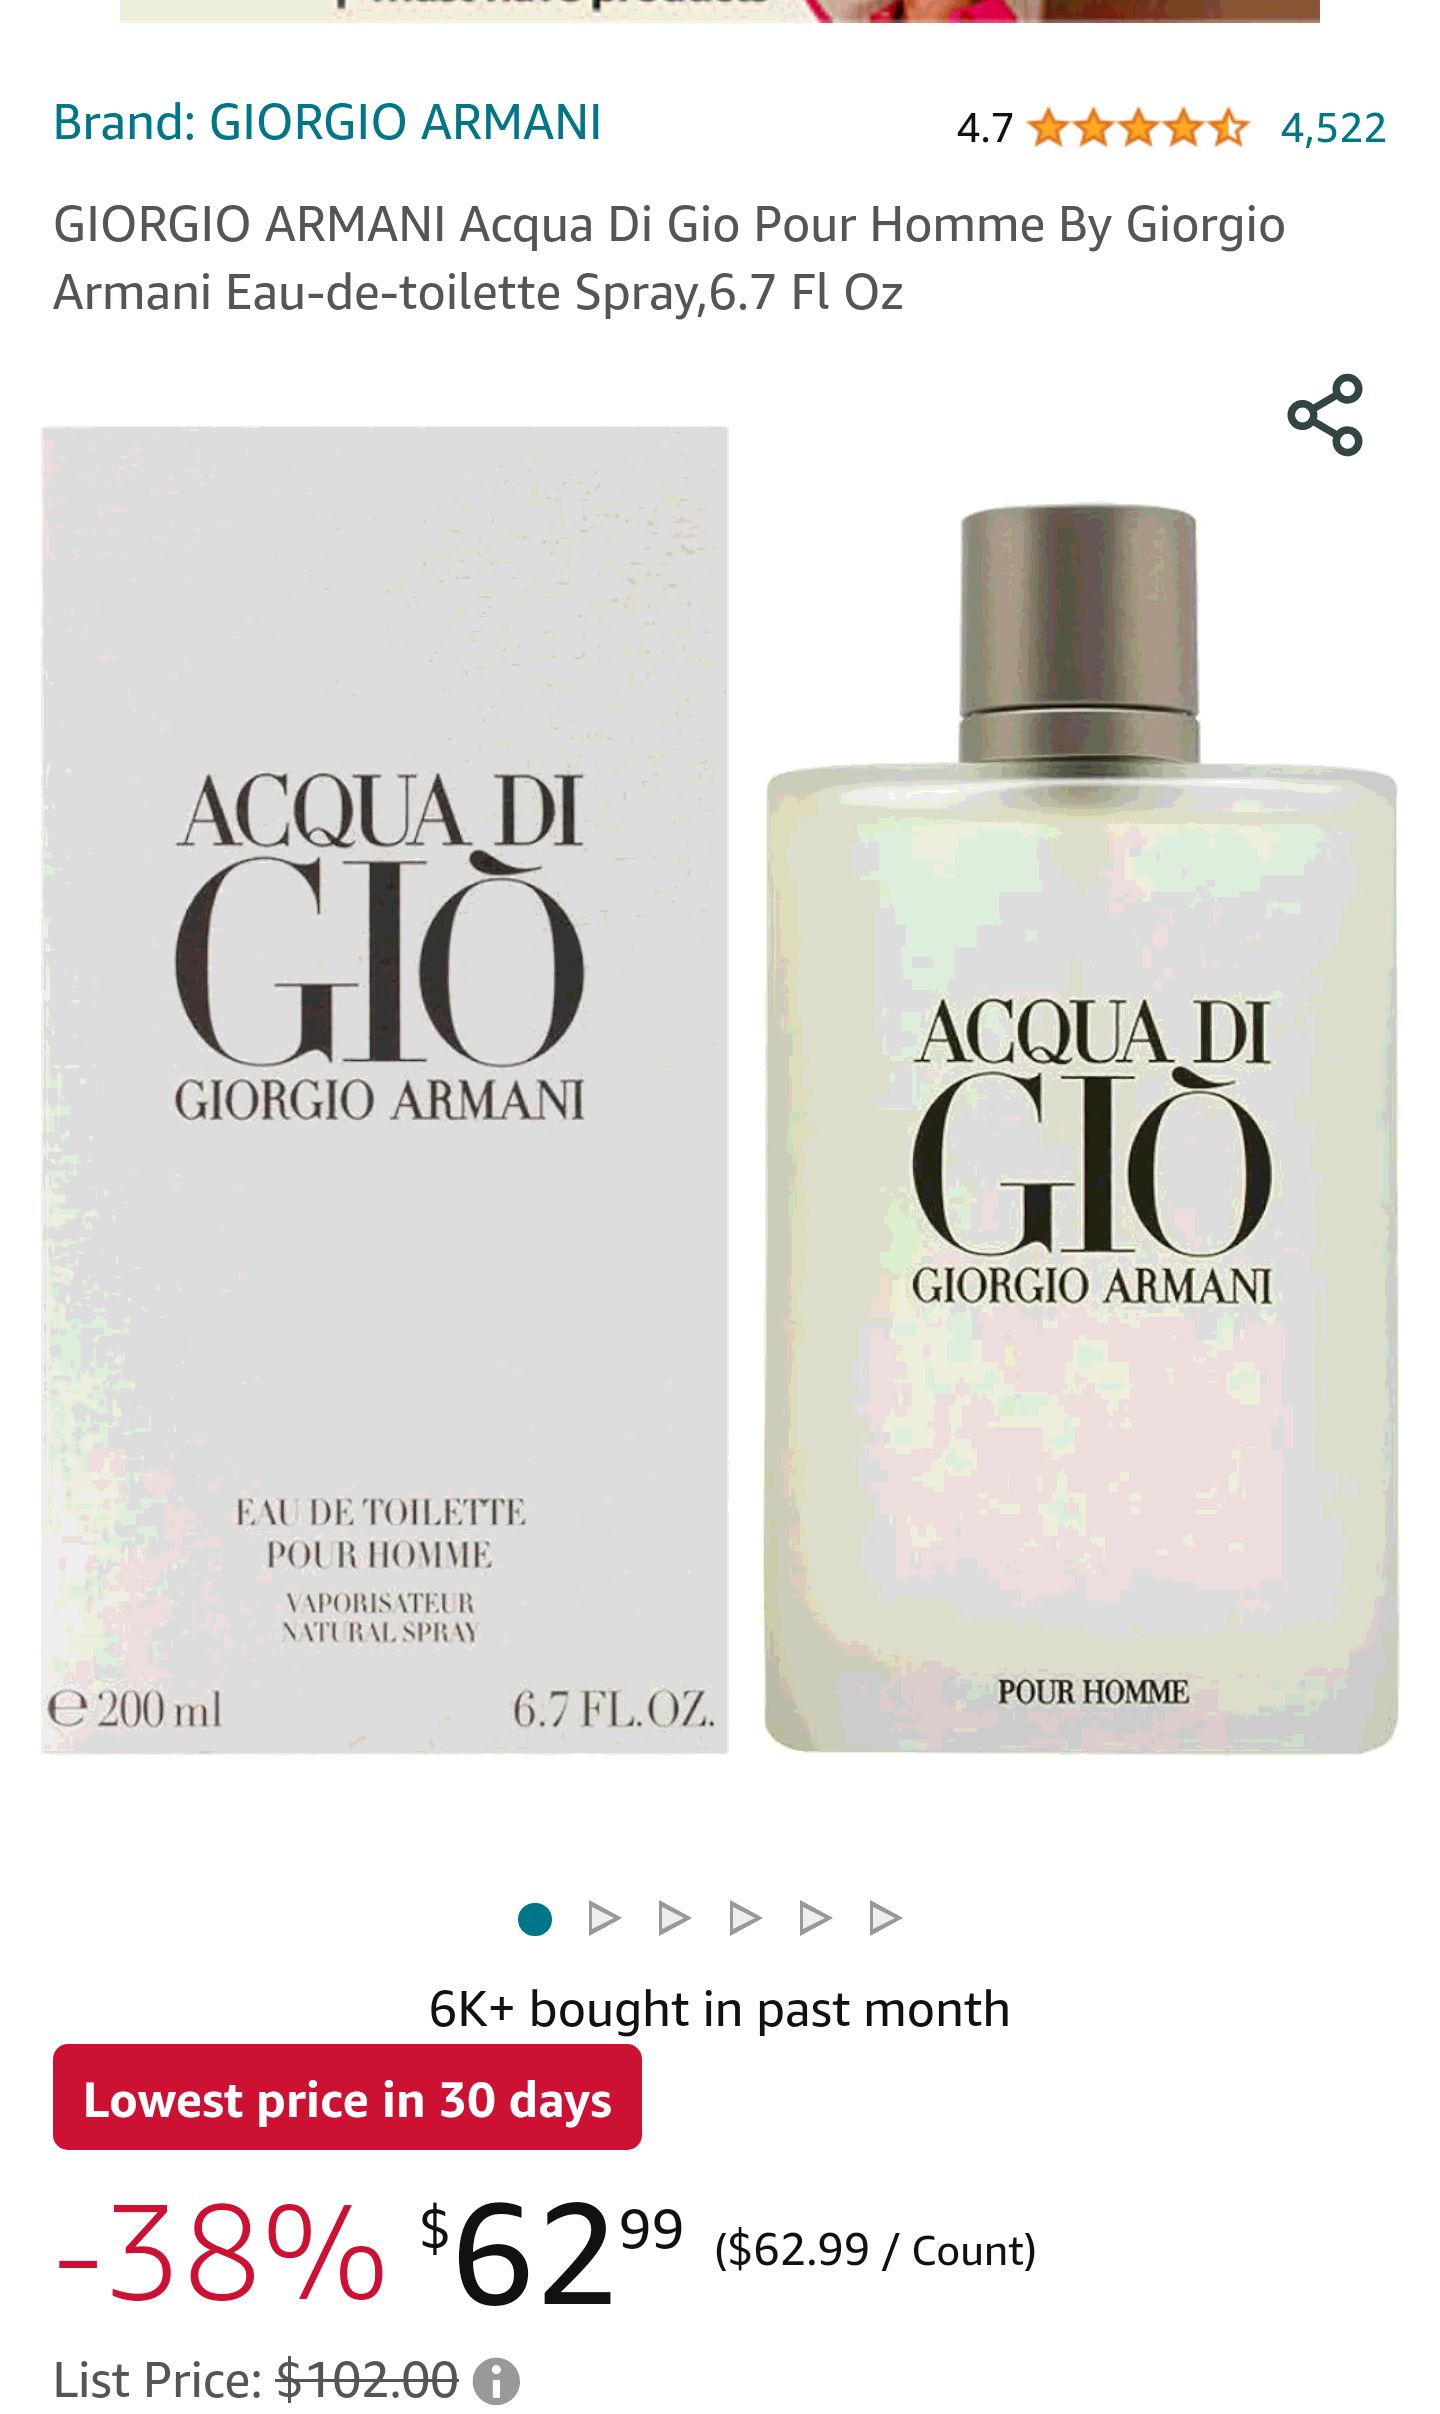 GIORGIO ARMANI Acqua Di Gio Pour Homme By Giorgio Armani Eau-de-toilette Spray,6.7 Fl Oz : Giorgio Armani: Beauty & Personal Care